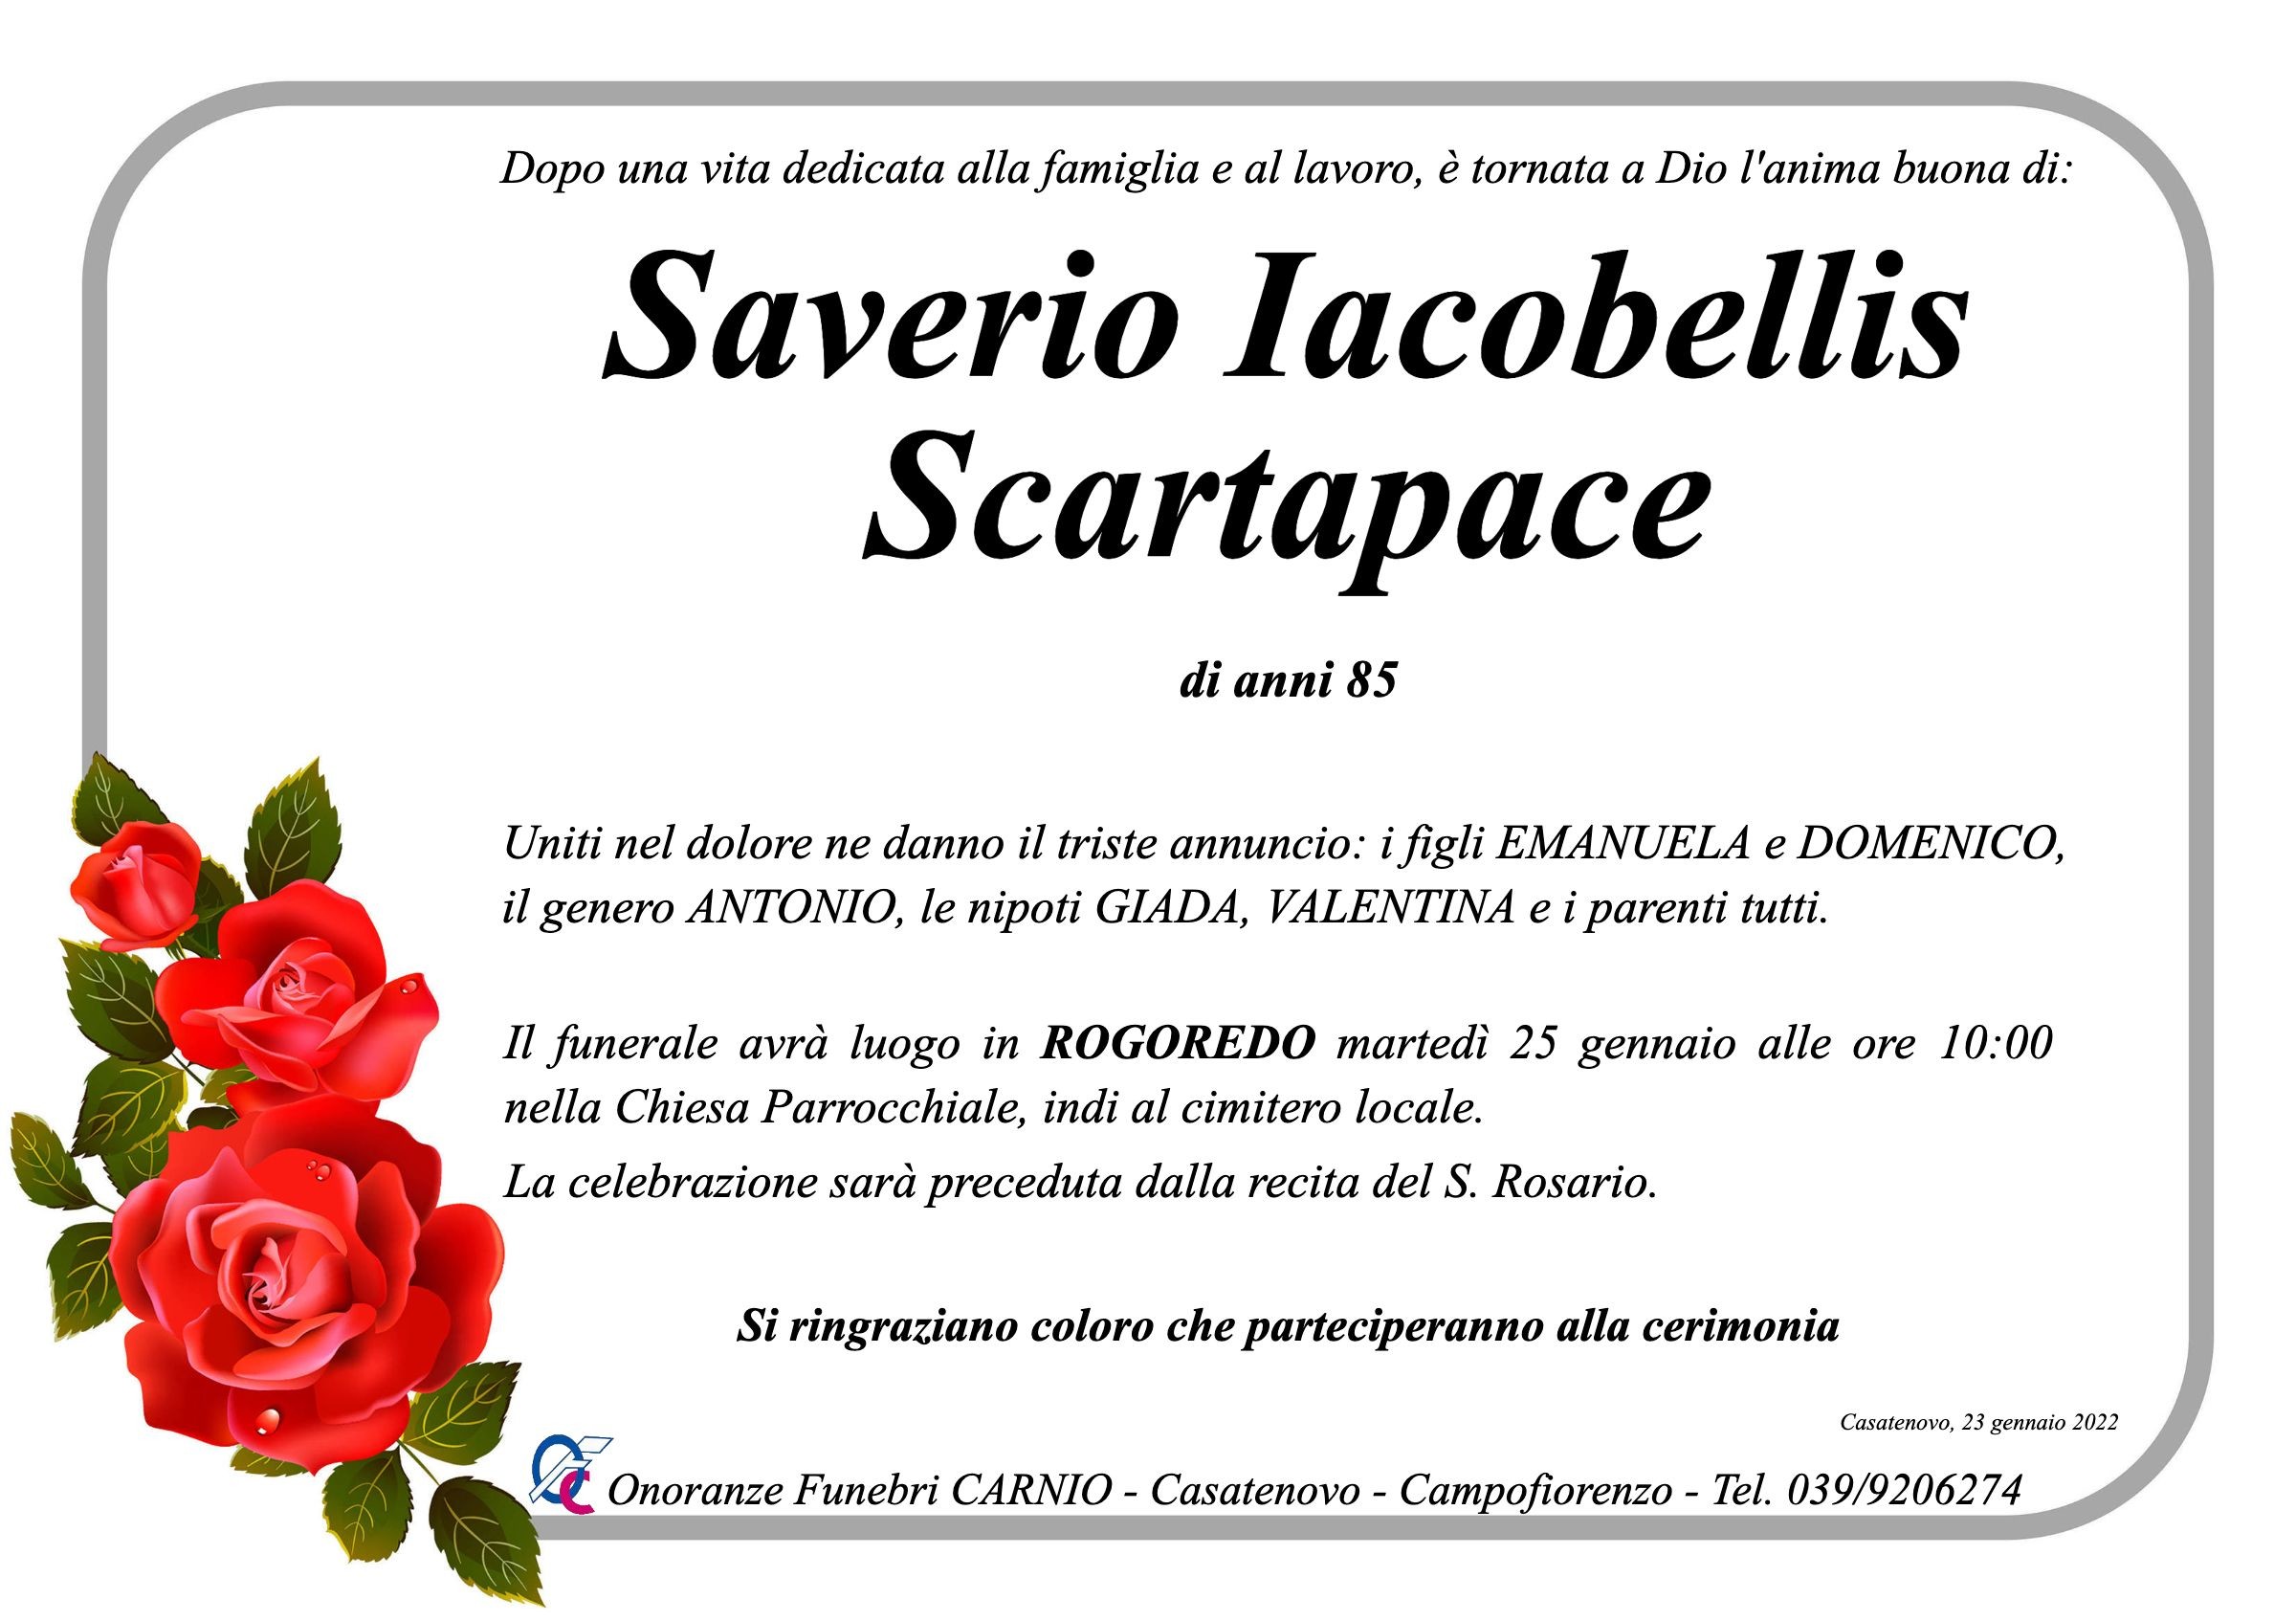 Saverio Iacobellis Scartapace